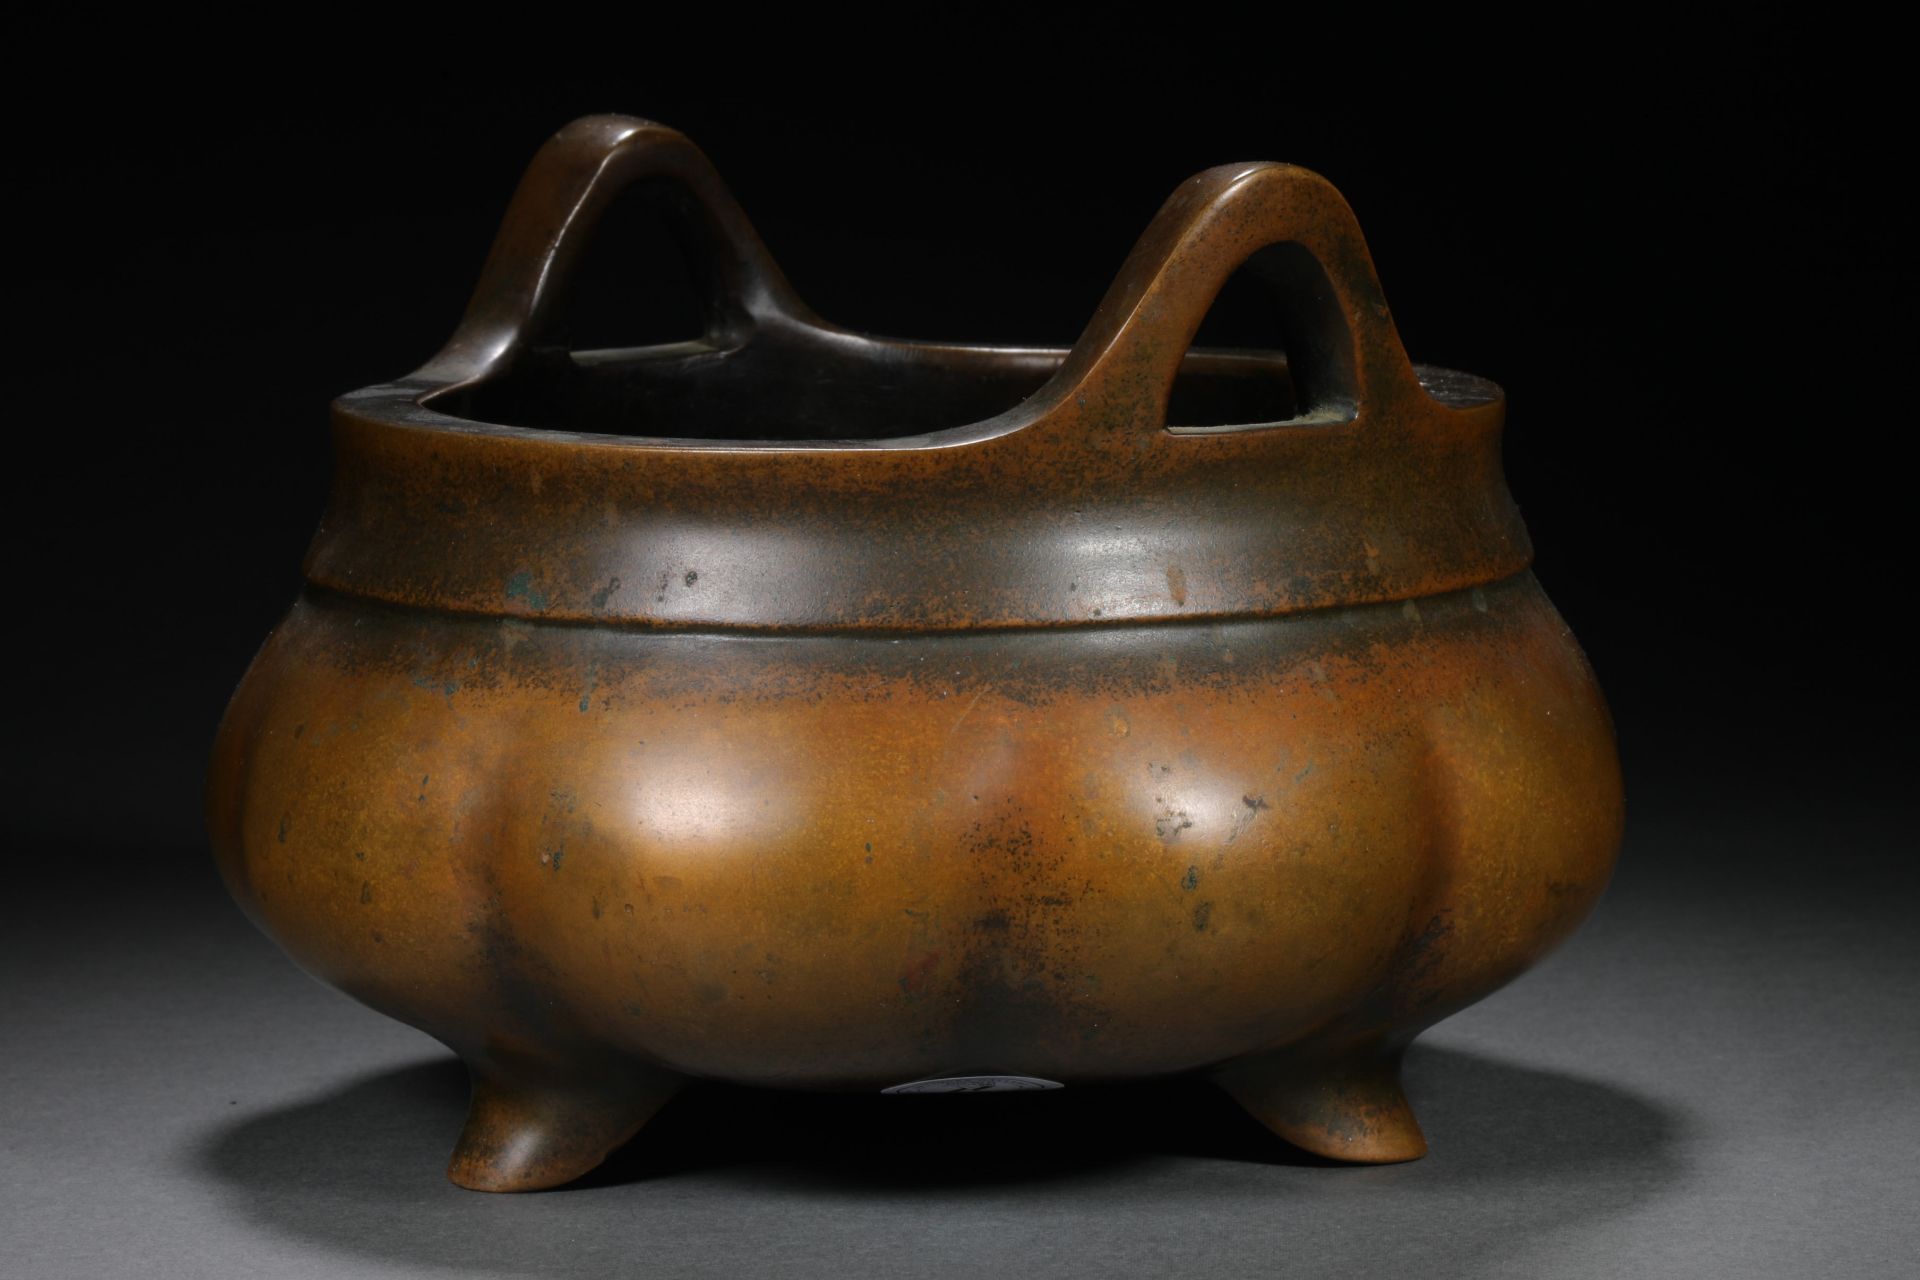 Qing dynasty bronze Xuande model incense burner - Image 4 of 8